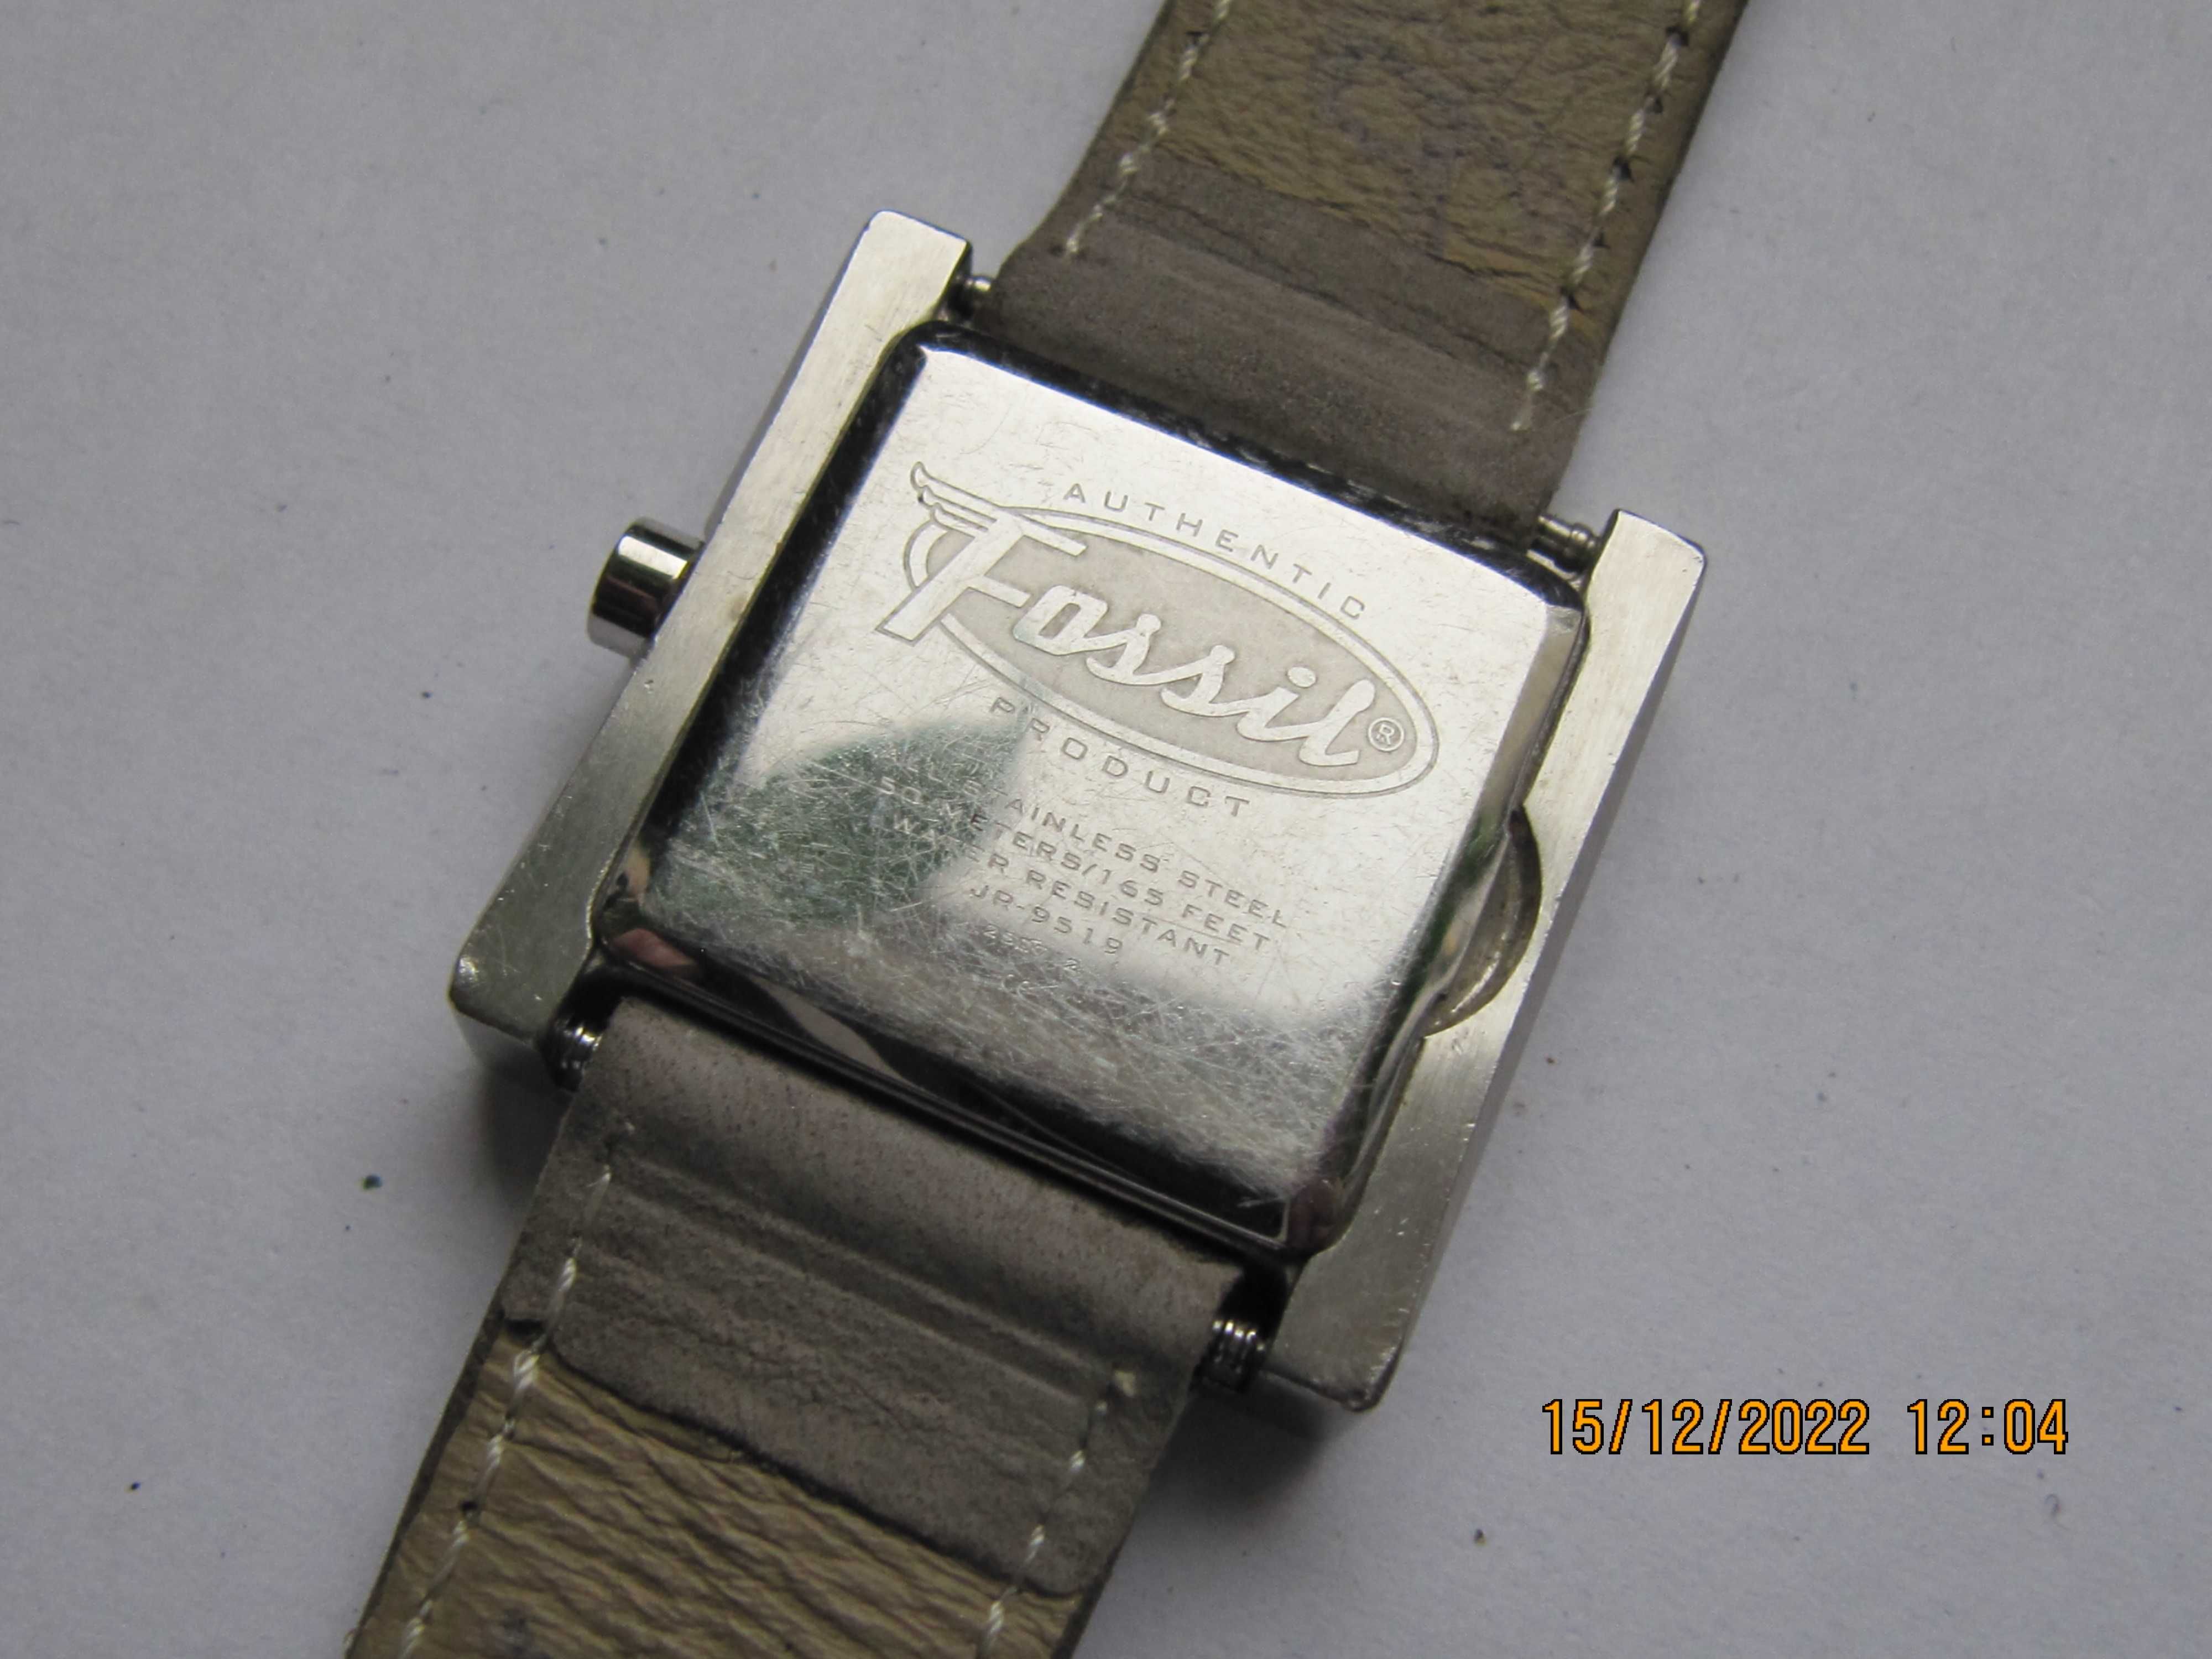 Fossil JR 9519 oryginalny damski zegarek